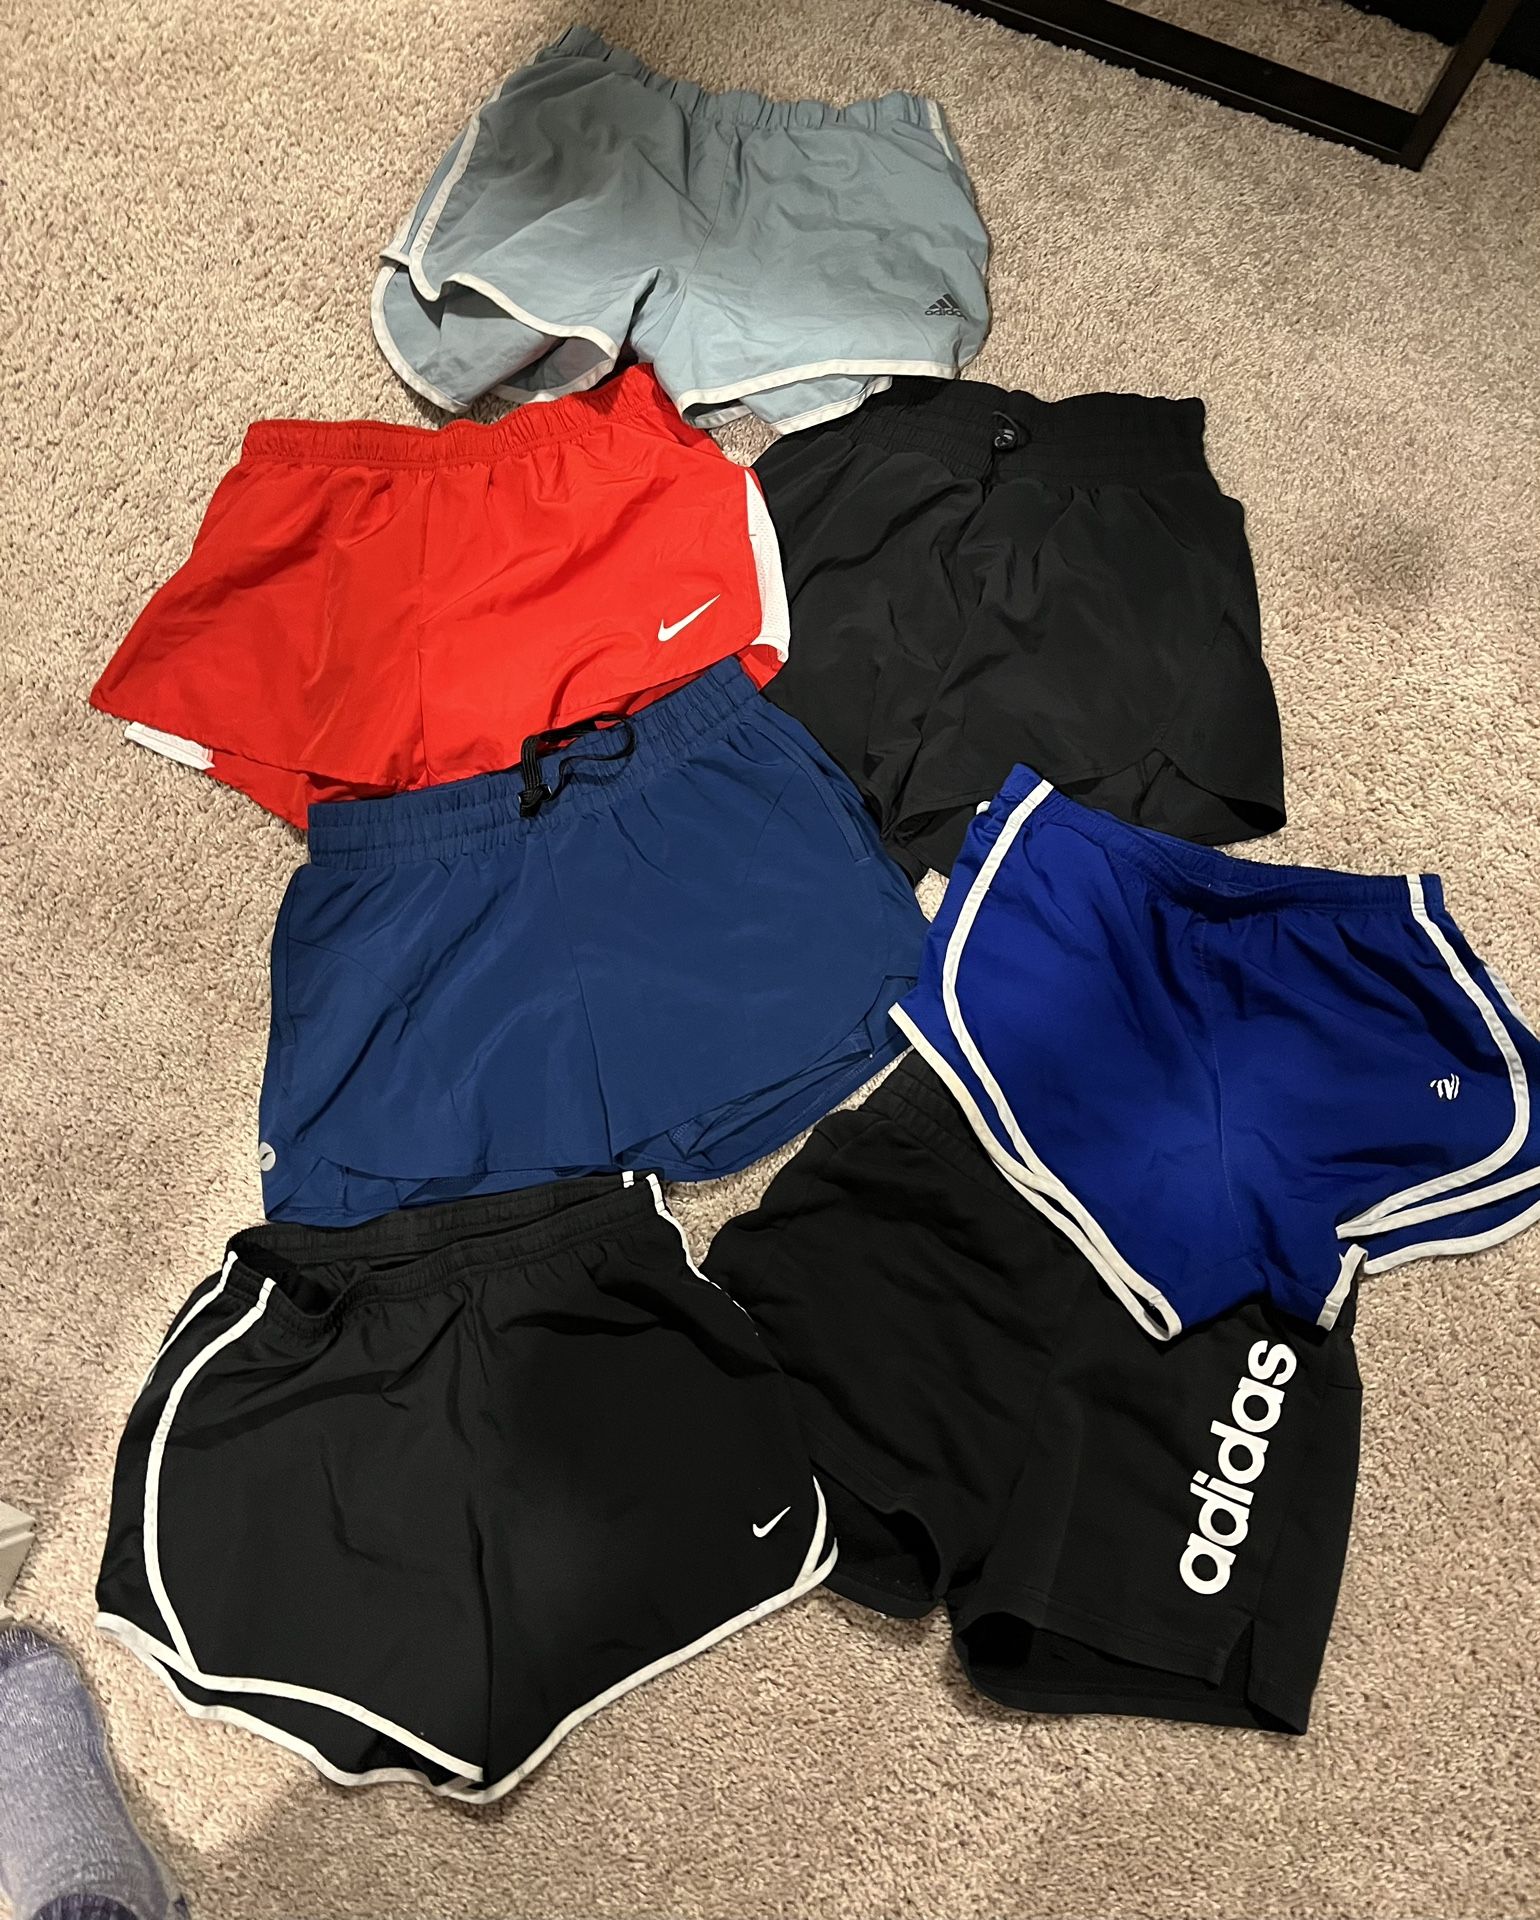 Athletic shorts bundle